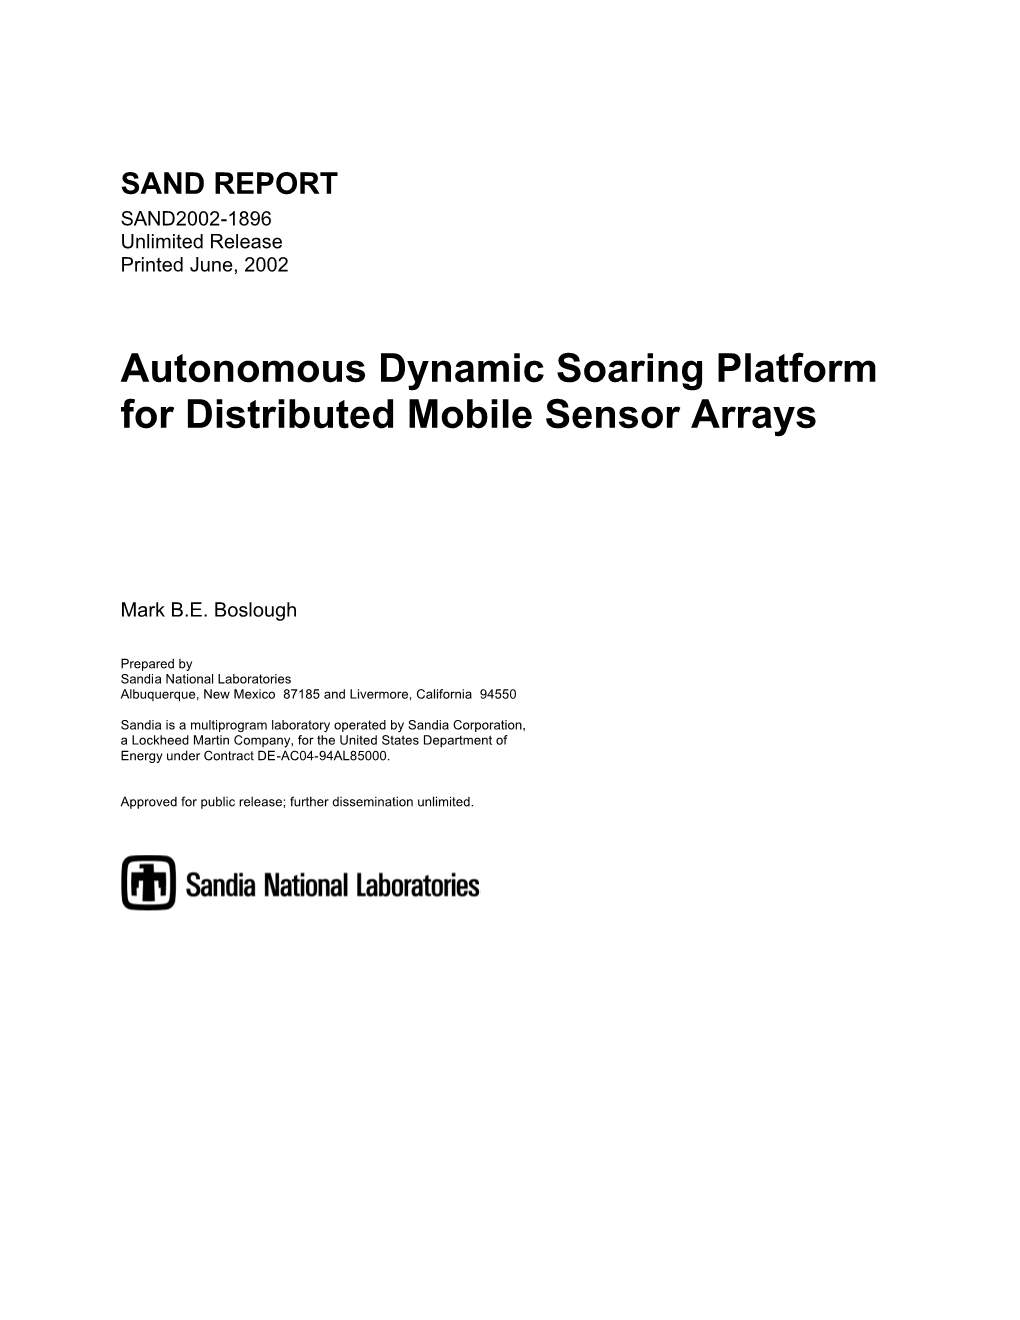 Autonomous Dynamic Soaring Platform for Distributed Mobile Sensor Arrays